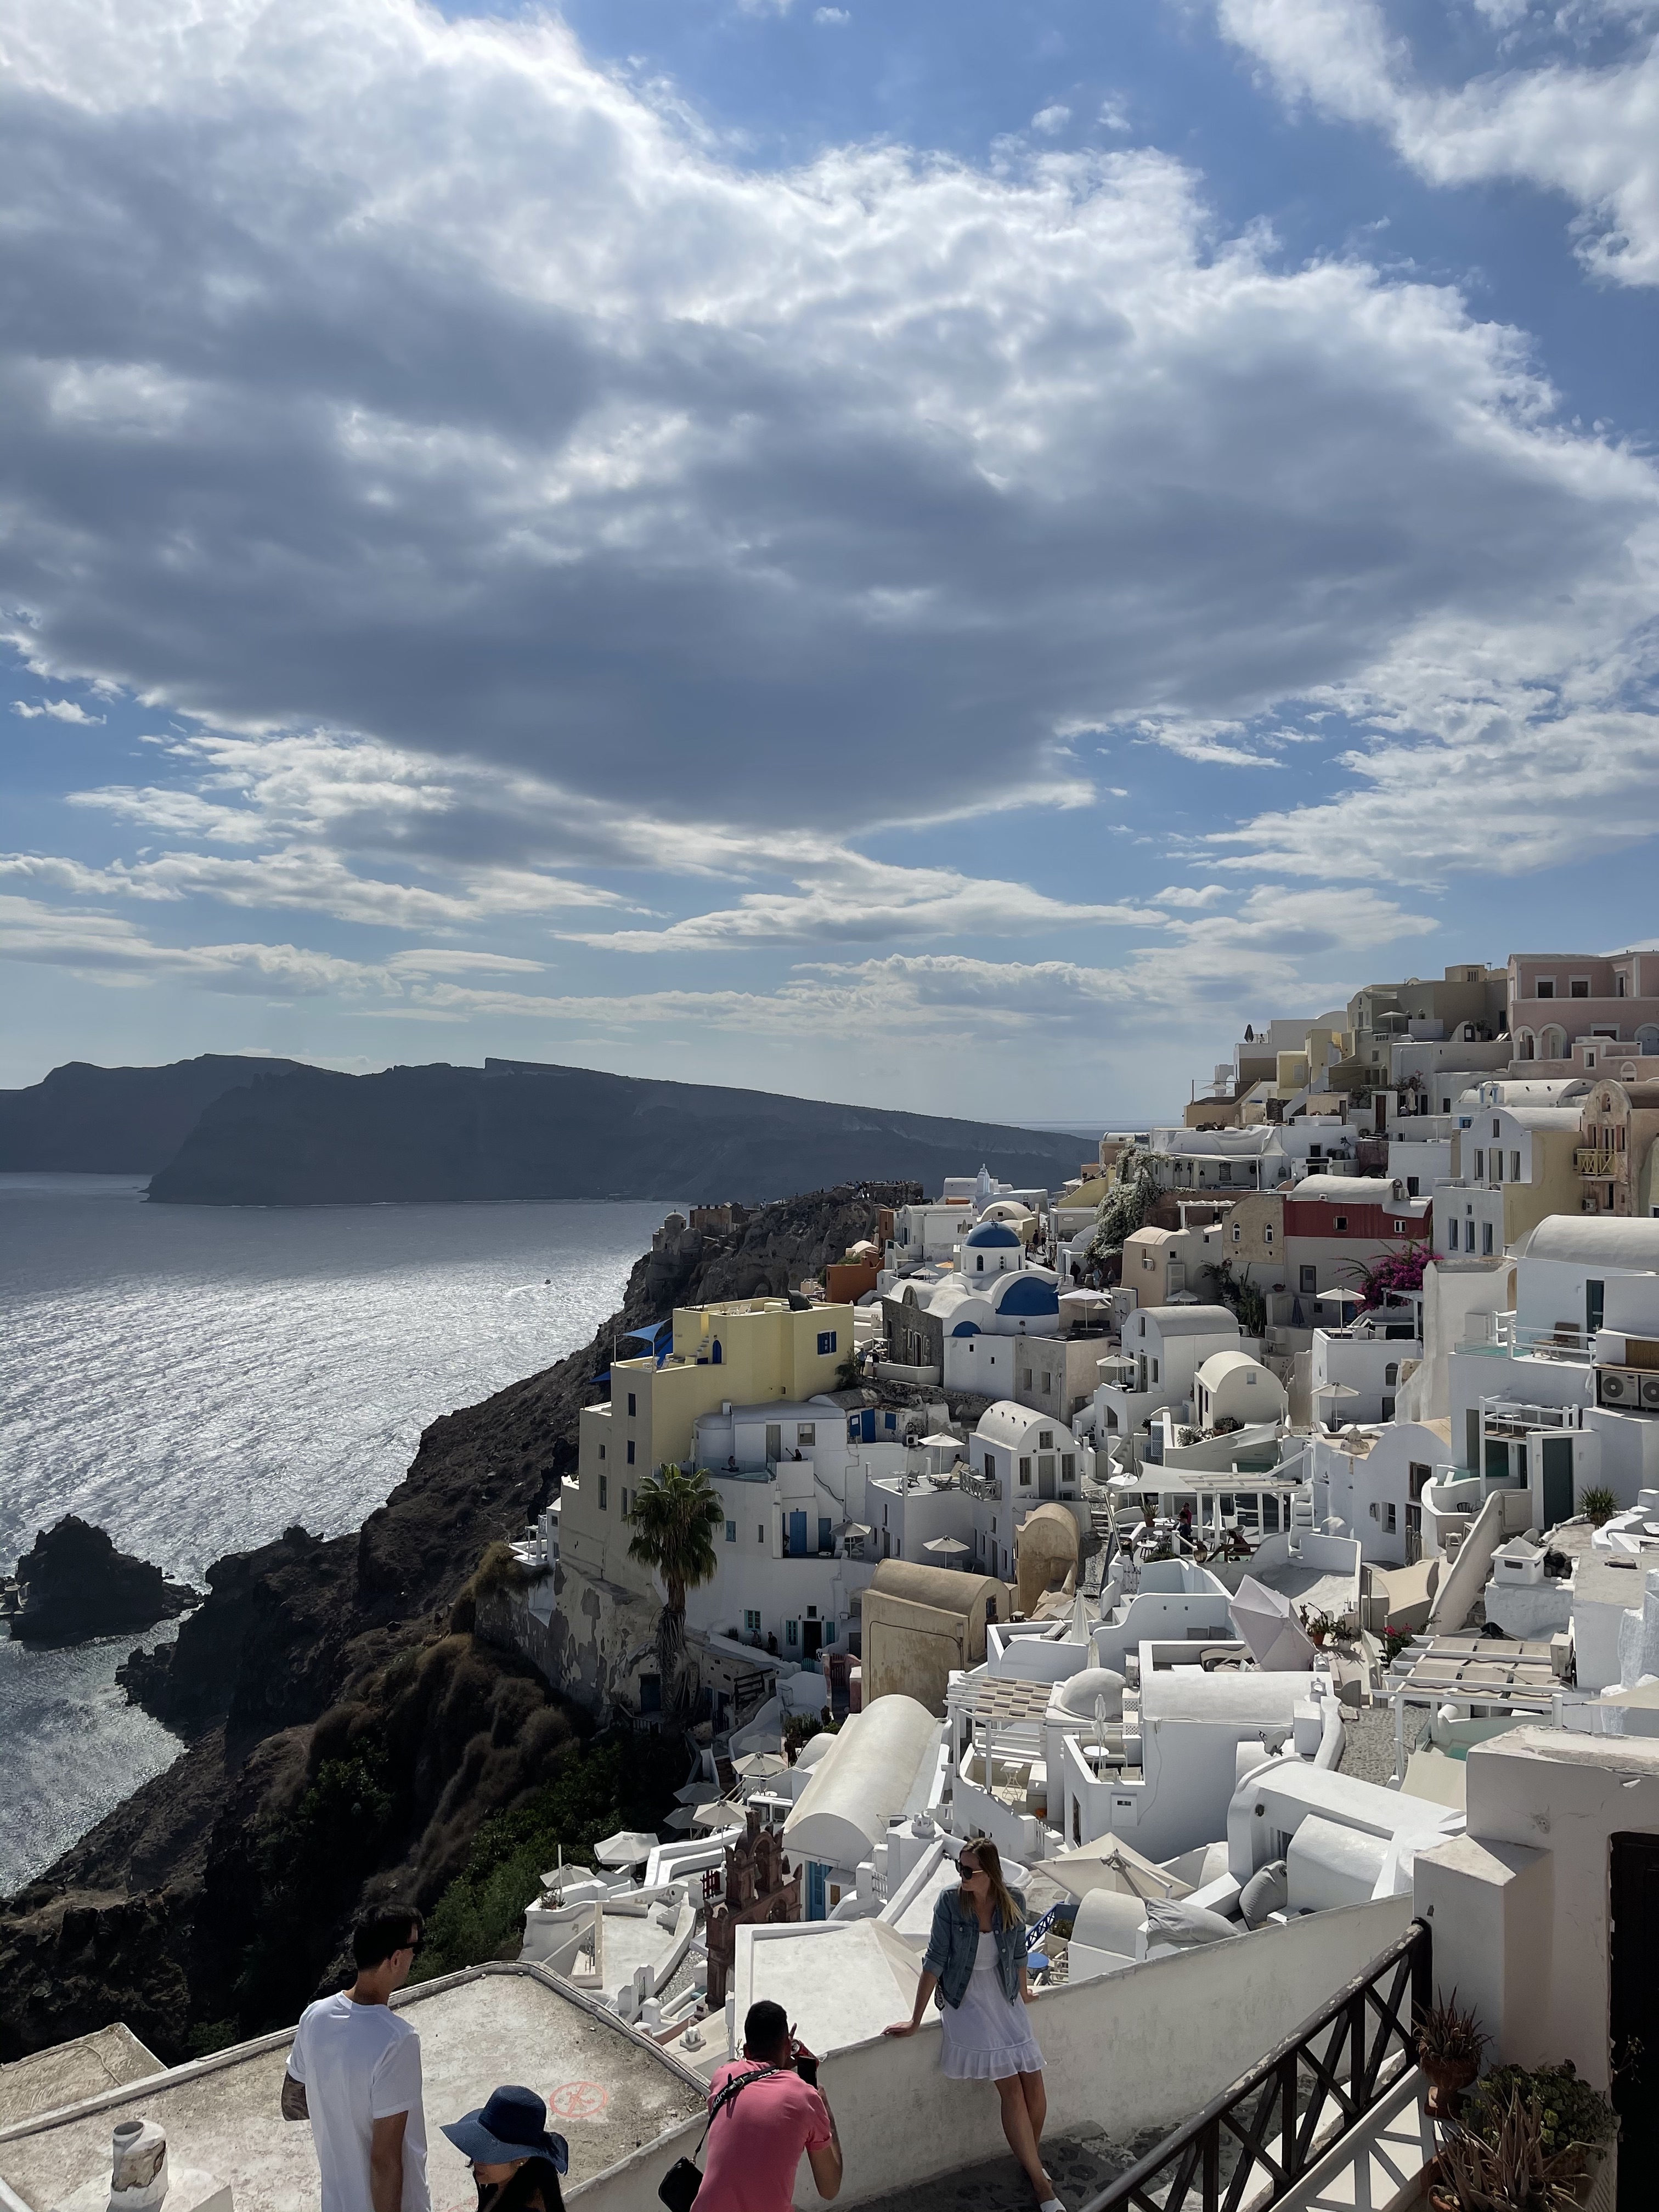 Santorini - csodahely vagy túlárazott turistacsalogató?